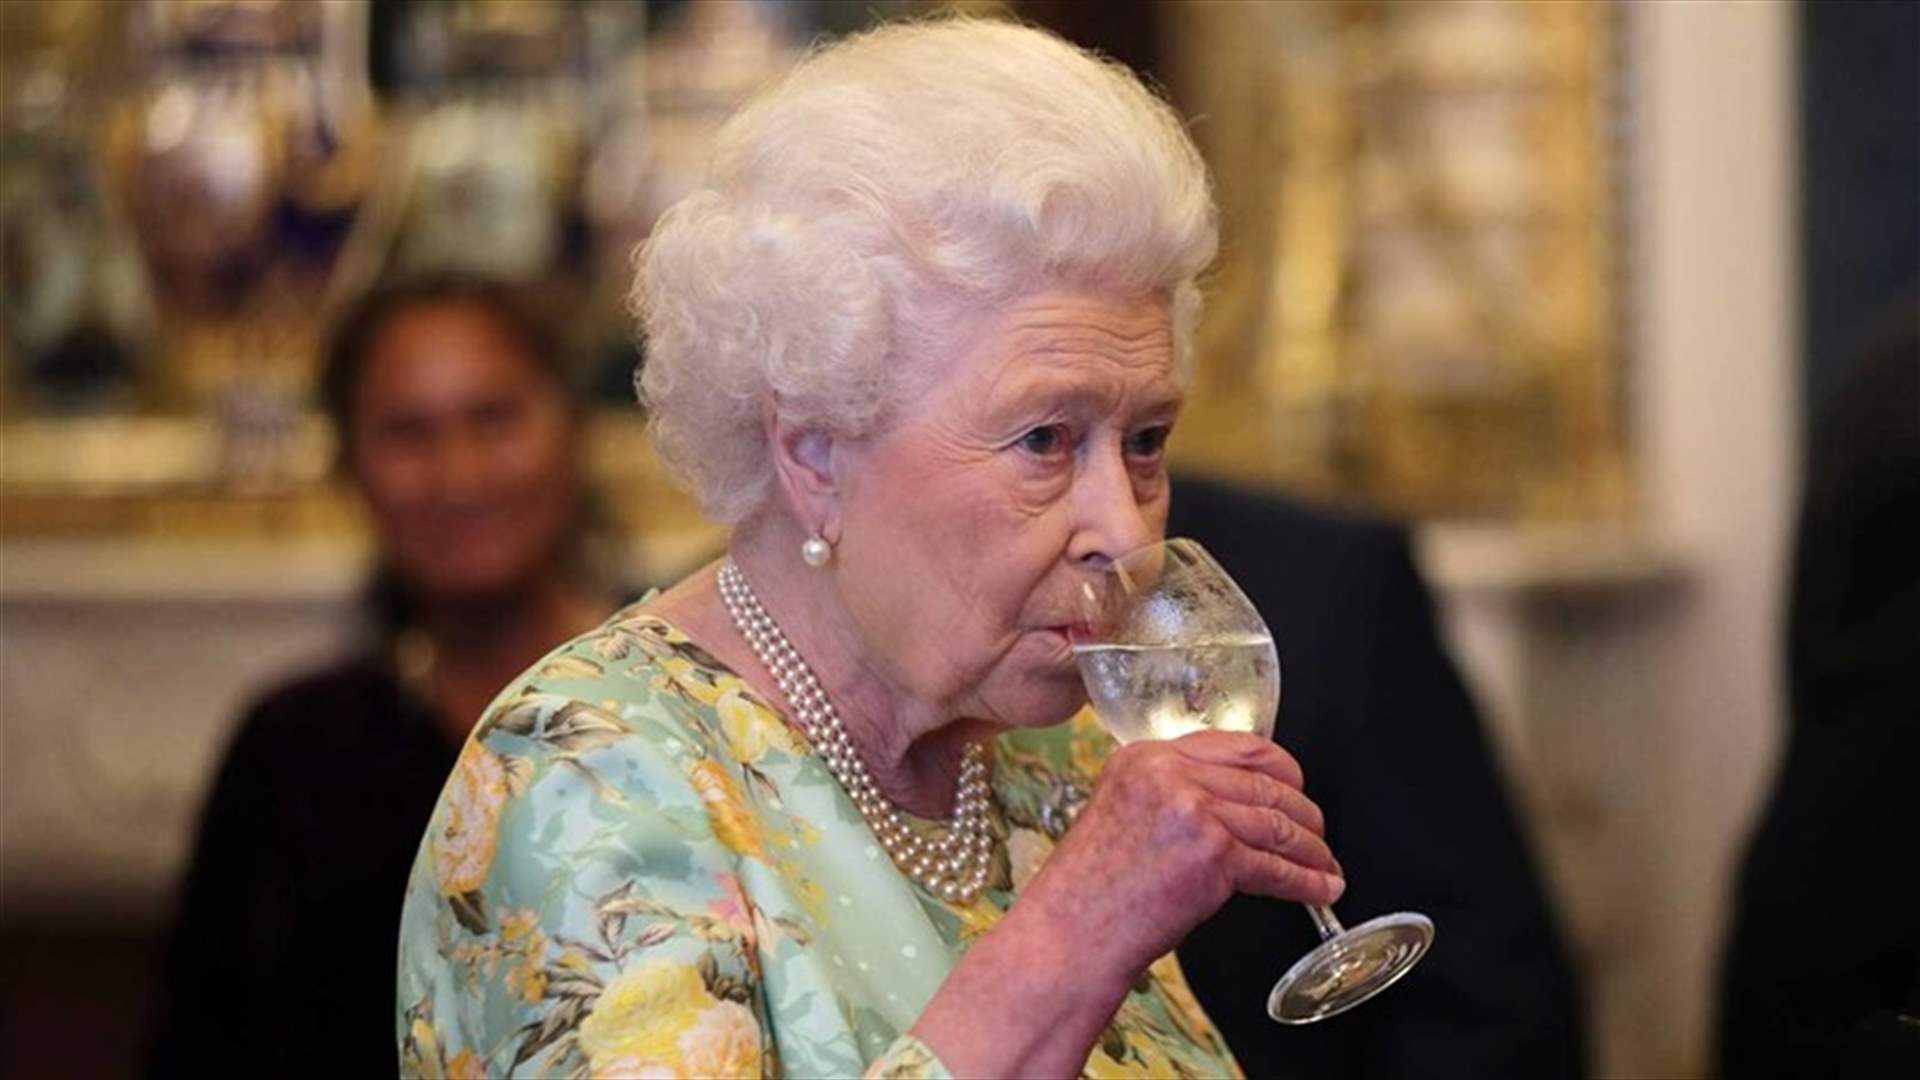 حفاظاً على صحتها... أطباء يمنعون الملكة إليزابيث من شرب الكحول